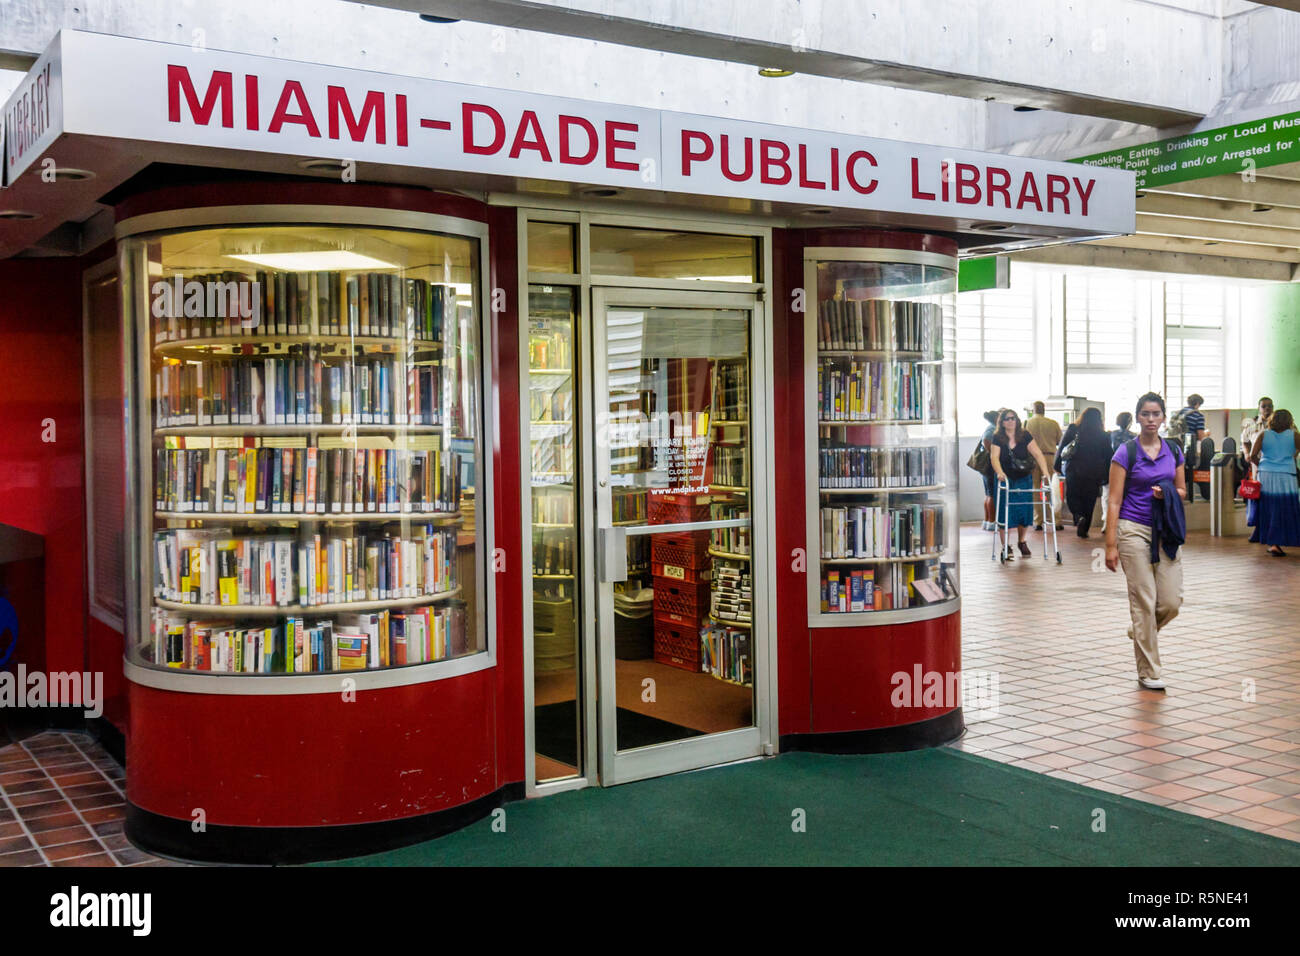 Miami Florida, Metrorail, transporte público, estación Civic Center, biblioteca pública Miami Dade, kiosco, conveniencia, servicio de transporte, lectura, libro, libros, wom hispano Foto de stock